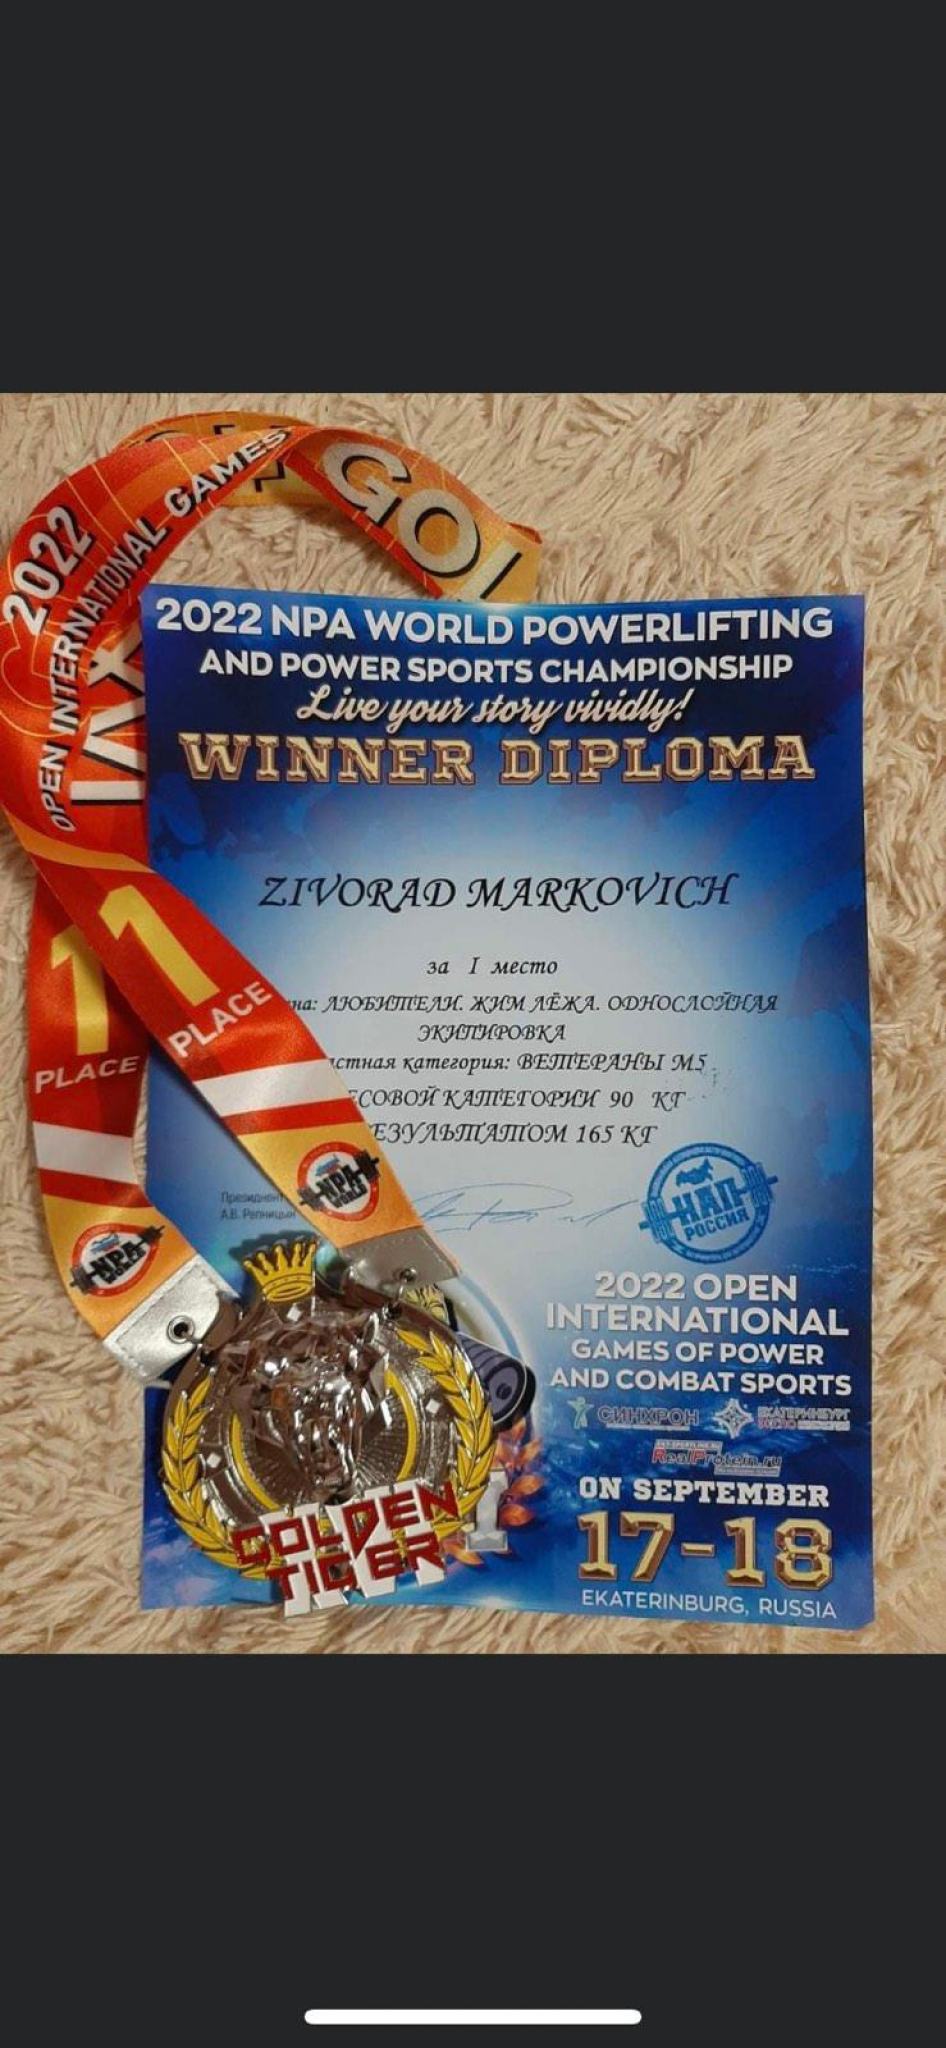 PONOS SRBIJE Preduzetnik iz Leskovca odbranio dva zlata u dizanju tegova i ostao najbolji svetski sportista!